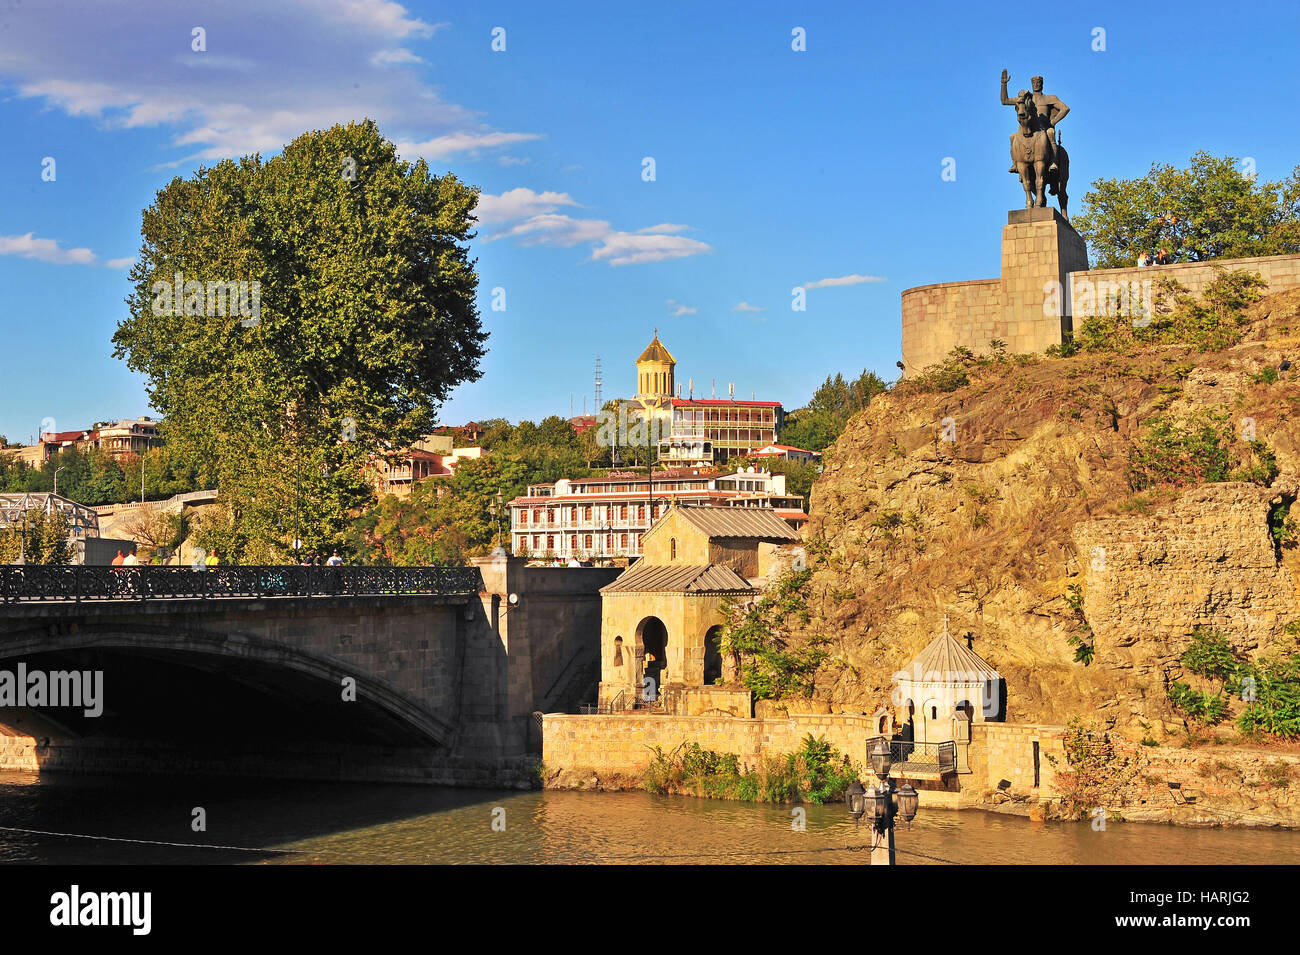 Tiflis, Georgien - 27 SEPTEMBER: Blick auf Ufer des Stadtzentrums Tbilisi, Georgien am 27. September 2015. Tiflis ist die Hauptstadt und größte Stadt Stockfoto